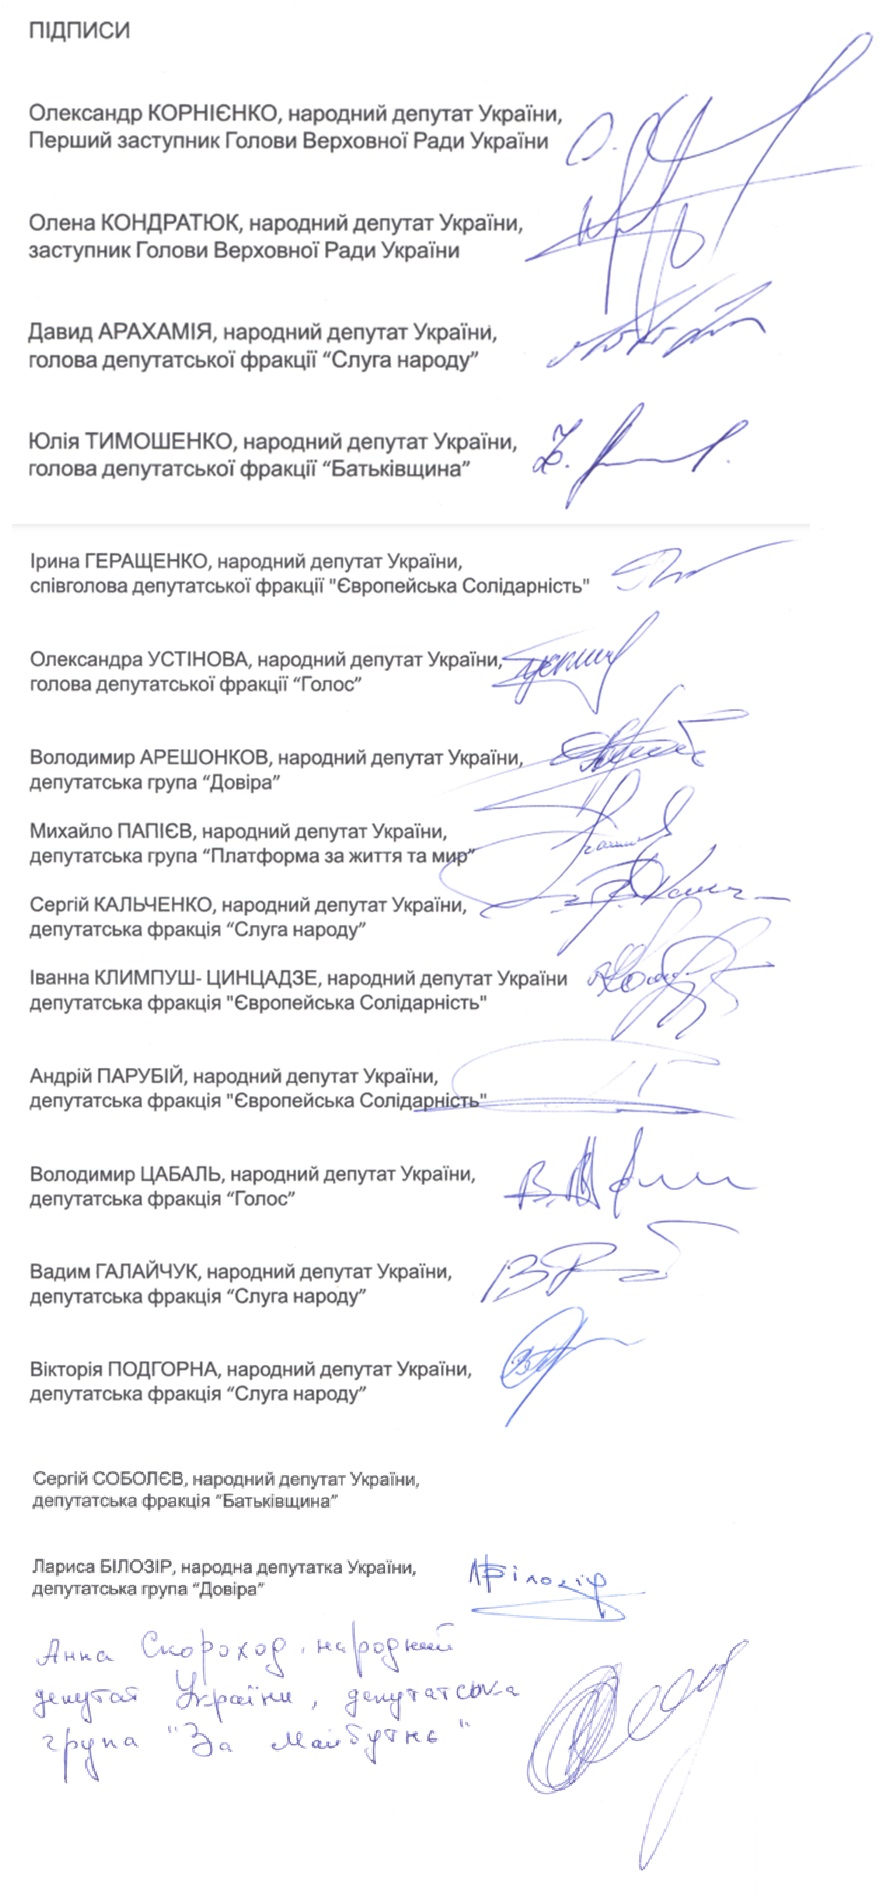 Свої підписи під намірами не проводити вибори до завершення війни поставили представники всіх парламентських фракцій та груп, крім «Відновлення України» 